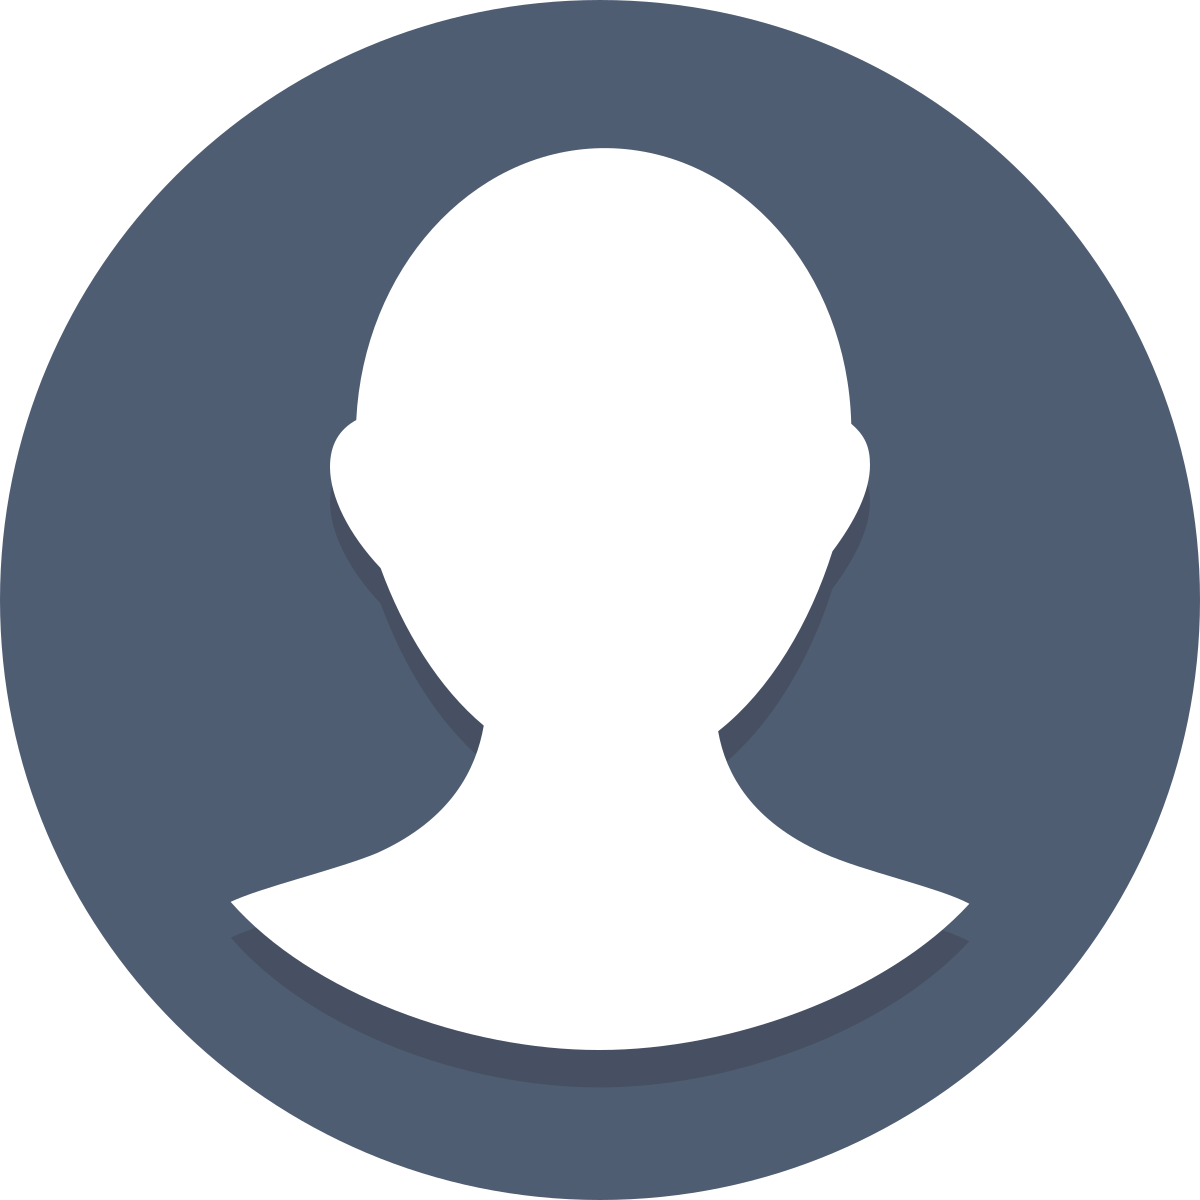 Новый пользователь также. Иконка профиля. Значок аватара. Круглый аватар. Изображение пользователя.